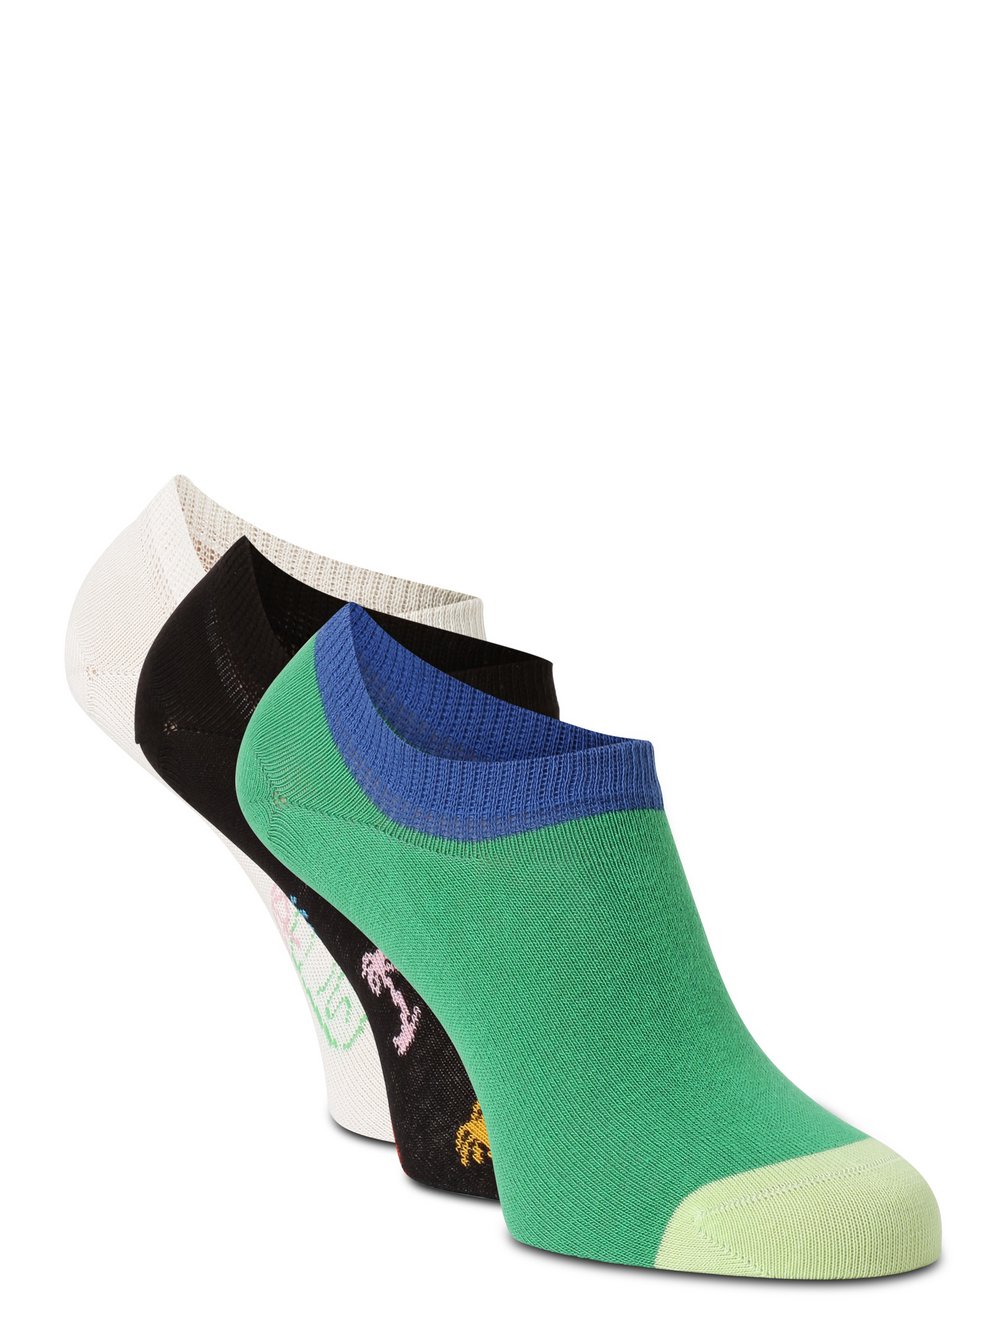 Happy Socks - Skarpety do obuwia sportowego pakowane po 3 szt., czarny|wielokolorowy